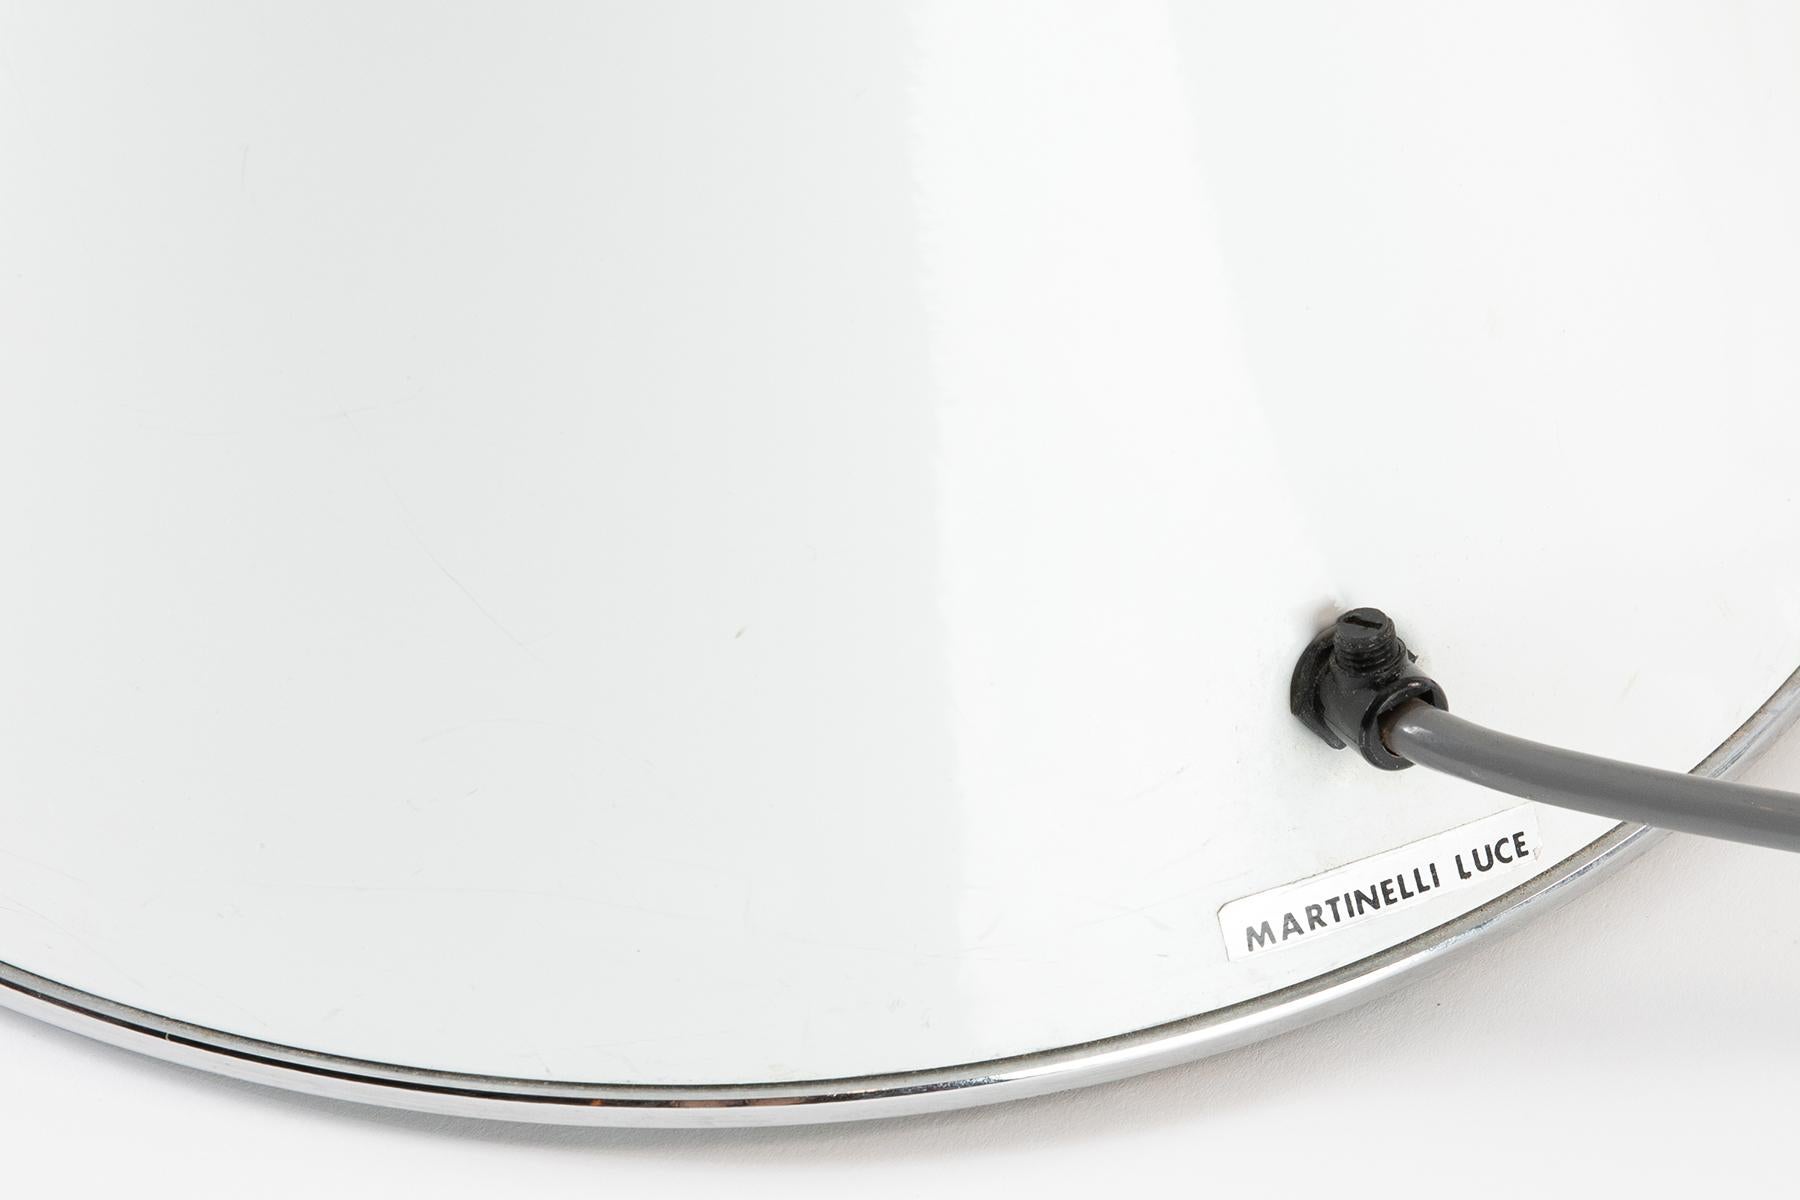 Italian Gae Aulenti Pipistrello Table Lamp for Martinelli Luce